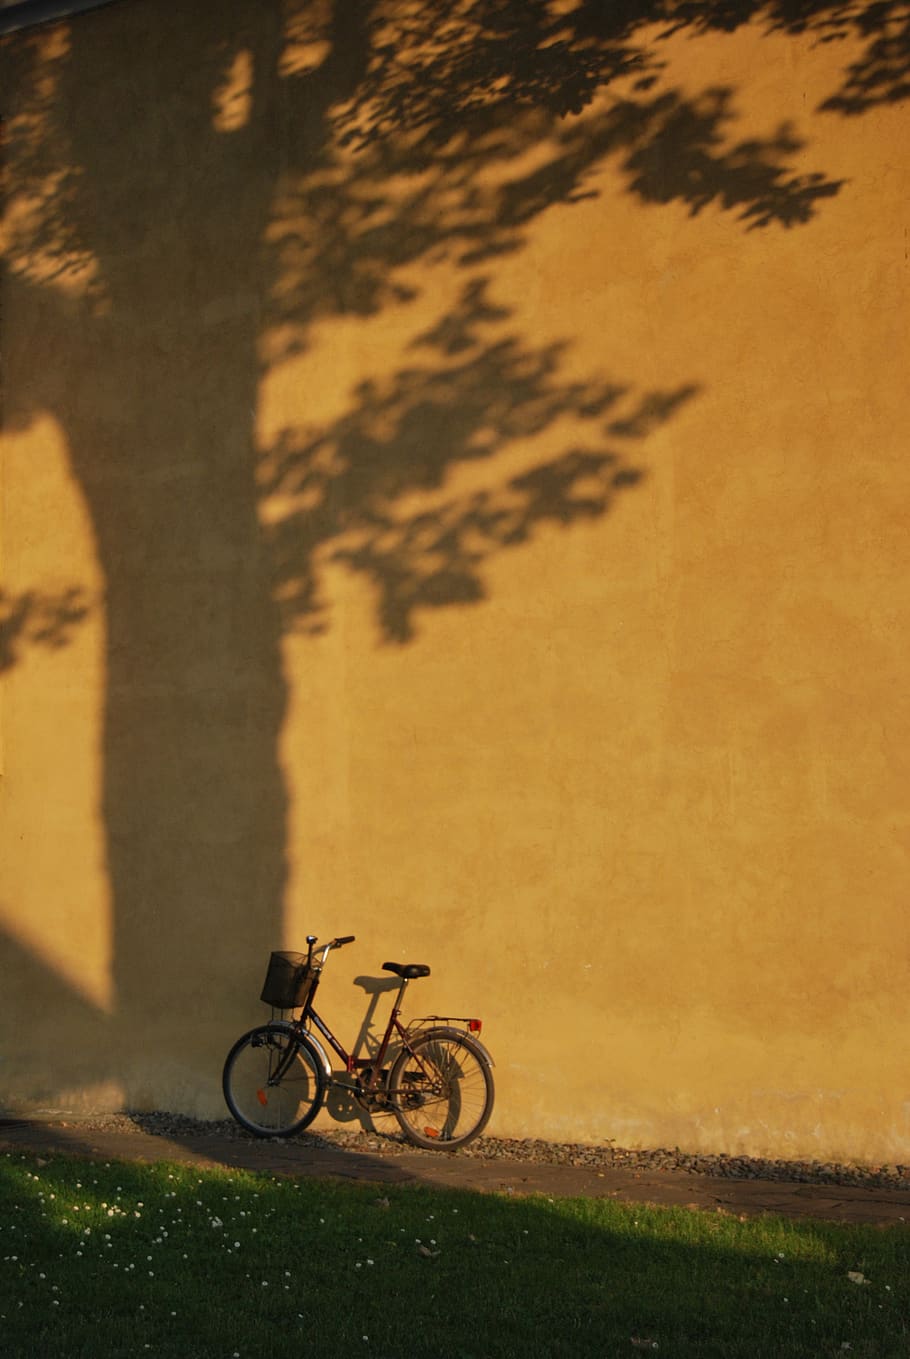 sepeda, rumput, dinding, pohon, bayangan, lelucon, angkutan, mode transportasi, sinar matahari, kendaraan darat